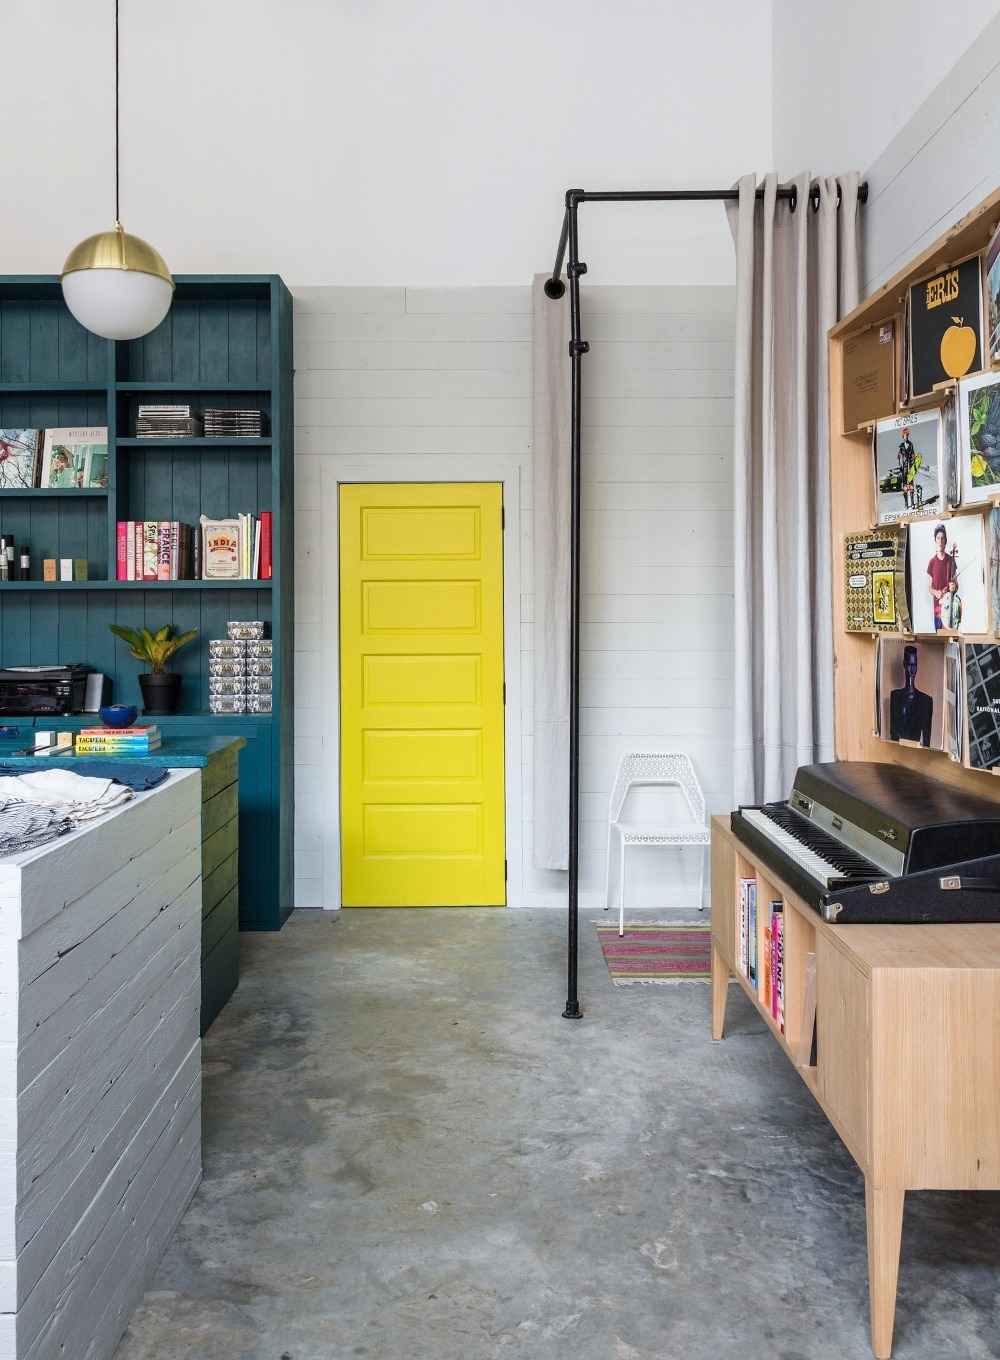 Måla den gula dörren utan att hänga upp den som en accent i vardagsrummet i retrostil